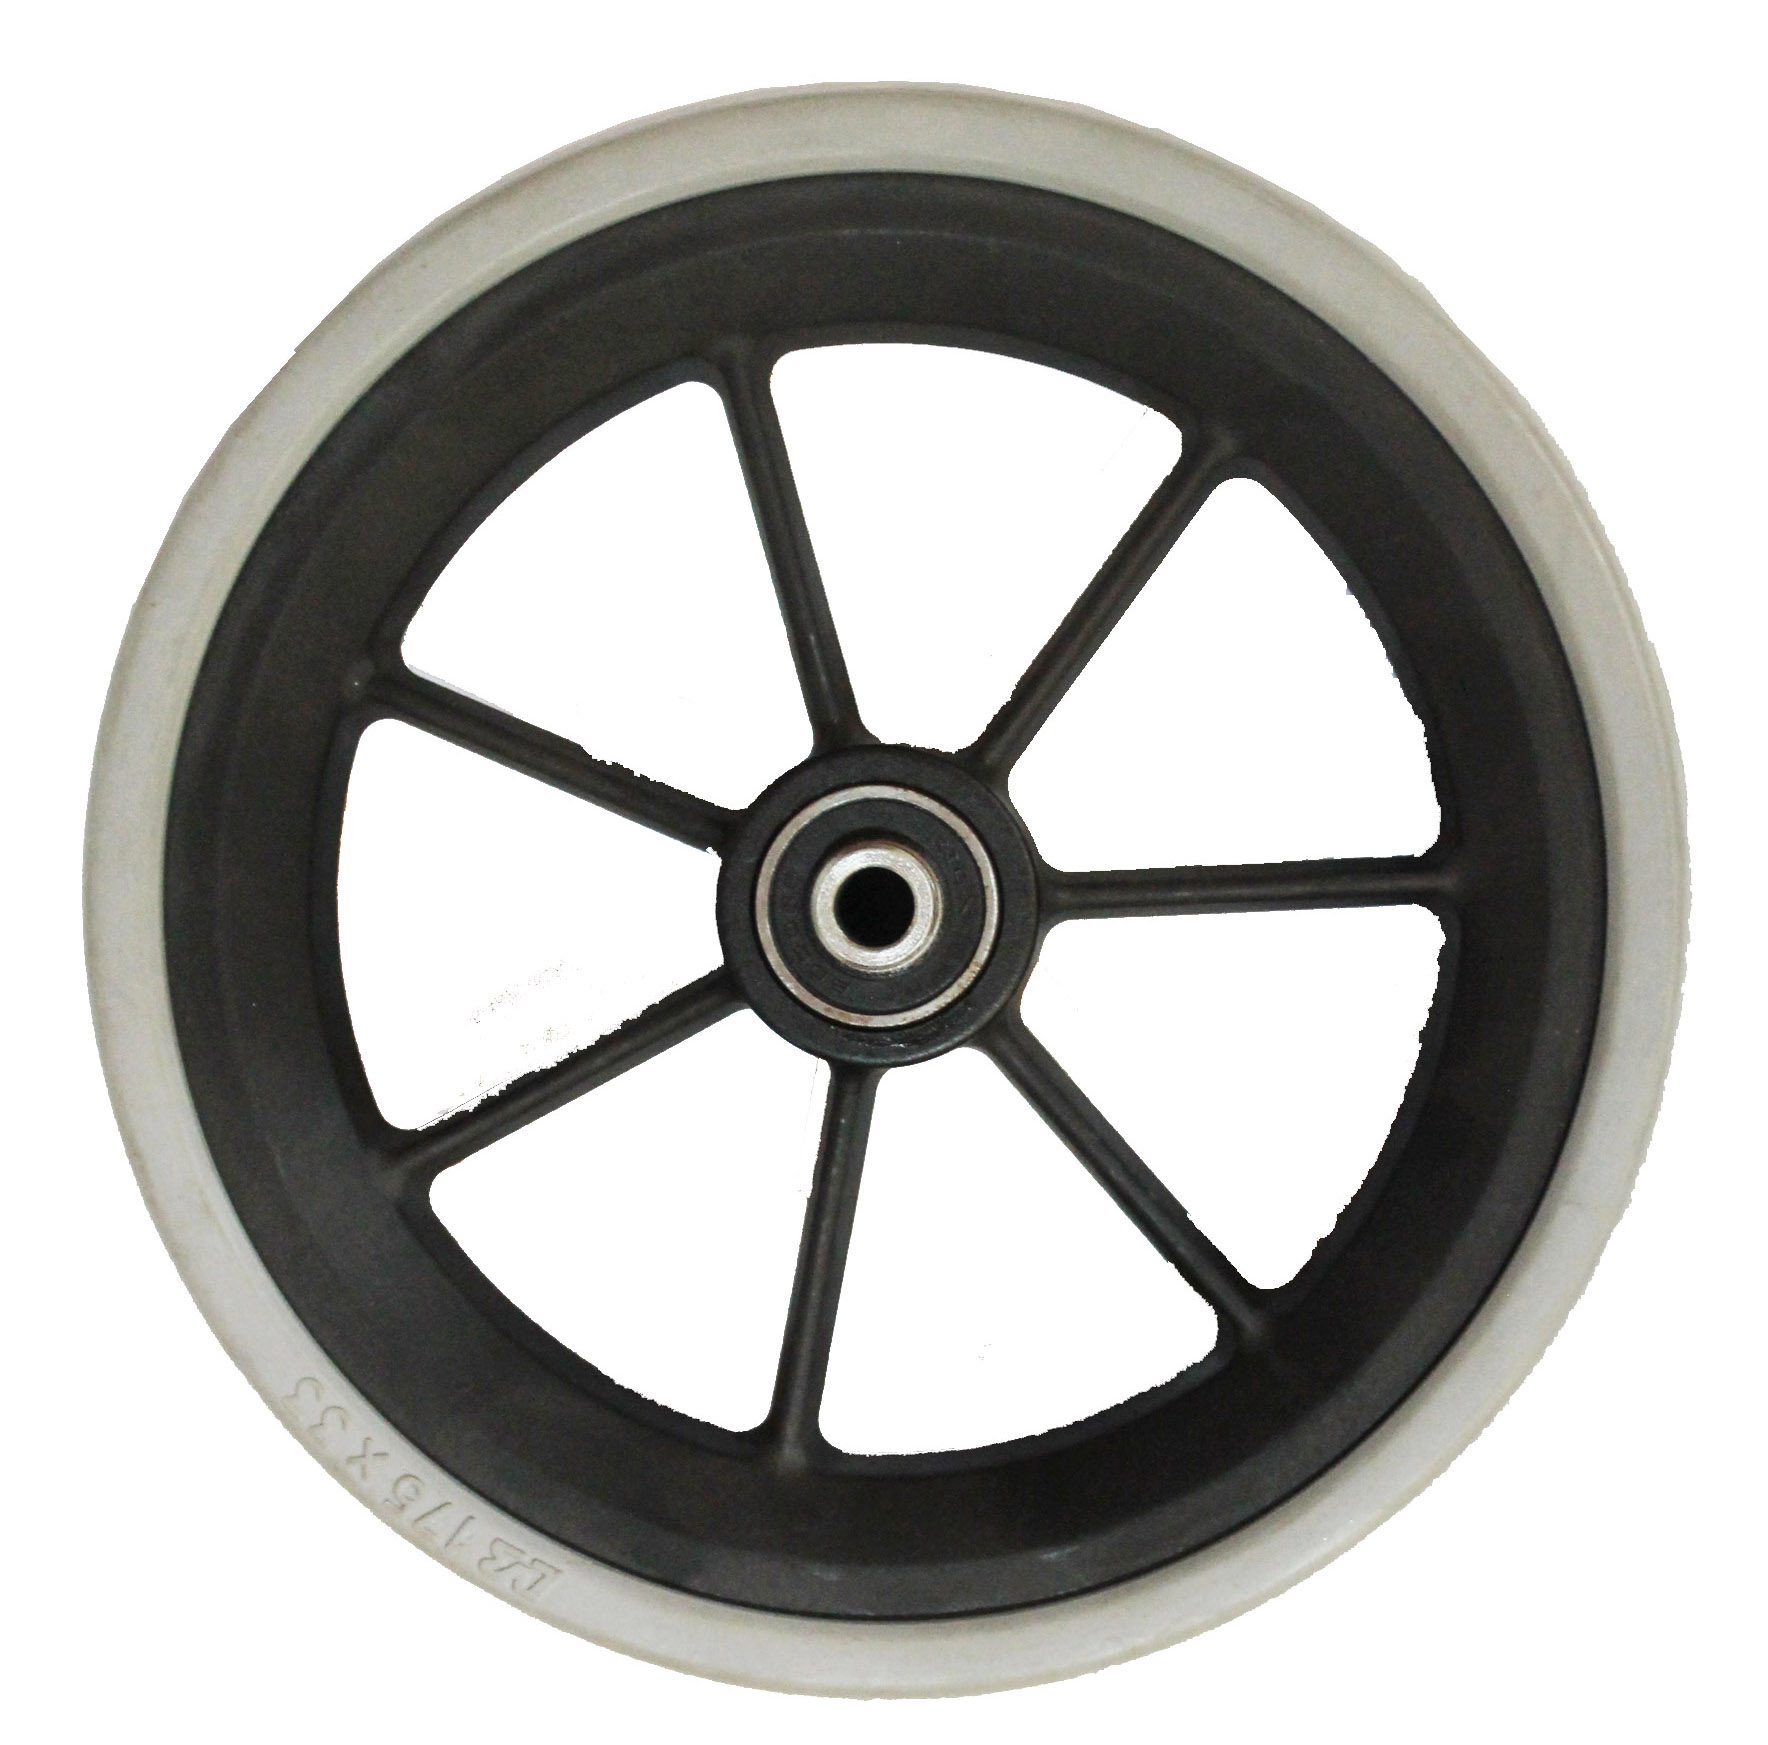 小ローラwheel.showerドアプラスチック製のローラーwheel.wheel roller.guideレールローラーホイール